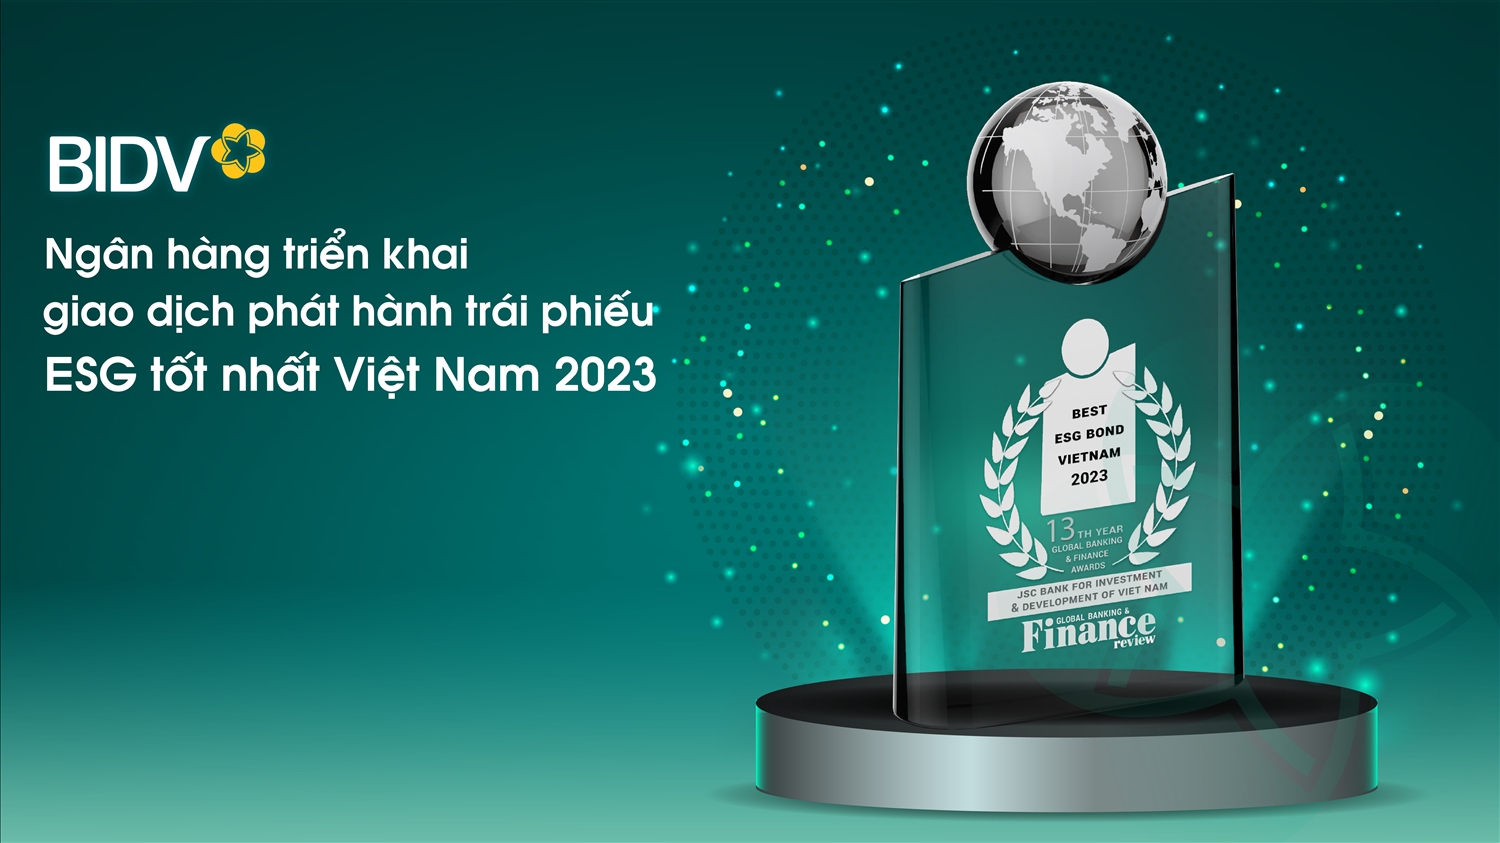 BIDV vừa được Global Banking and Finance Review (GBFR) trao tặng giải thưởng Ngân hàng triển khai giao dịch phát hành trái phiếu ESG tốt nhất Việt Nam 2023 (Best ESG Bond Vietnam 2023).